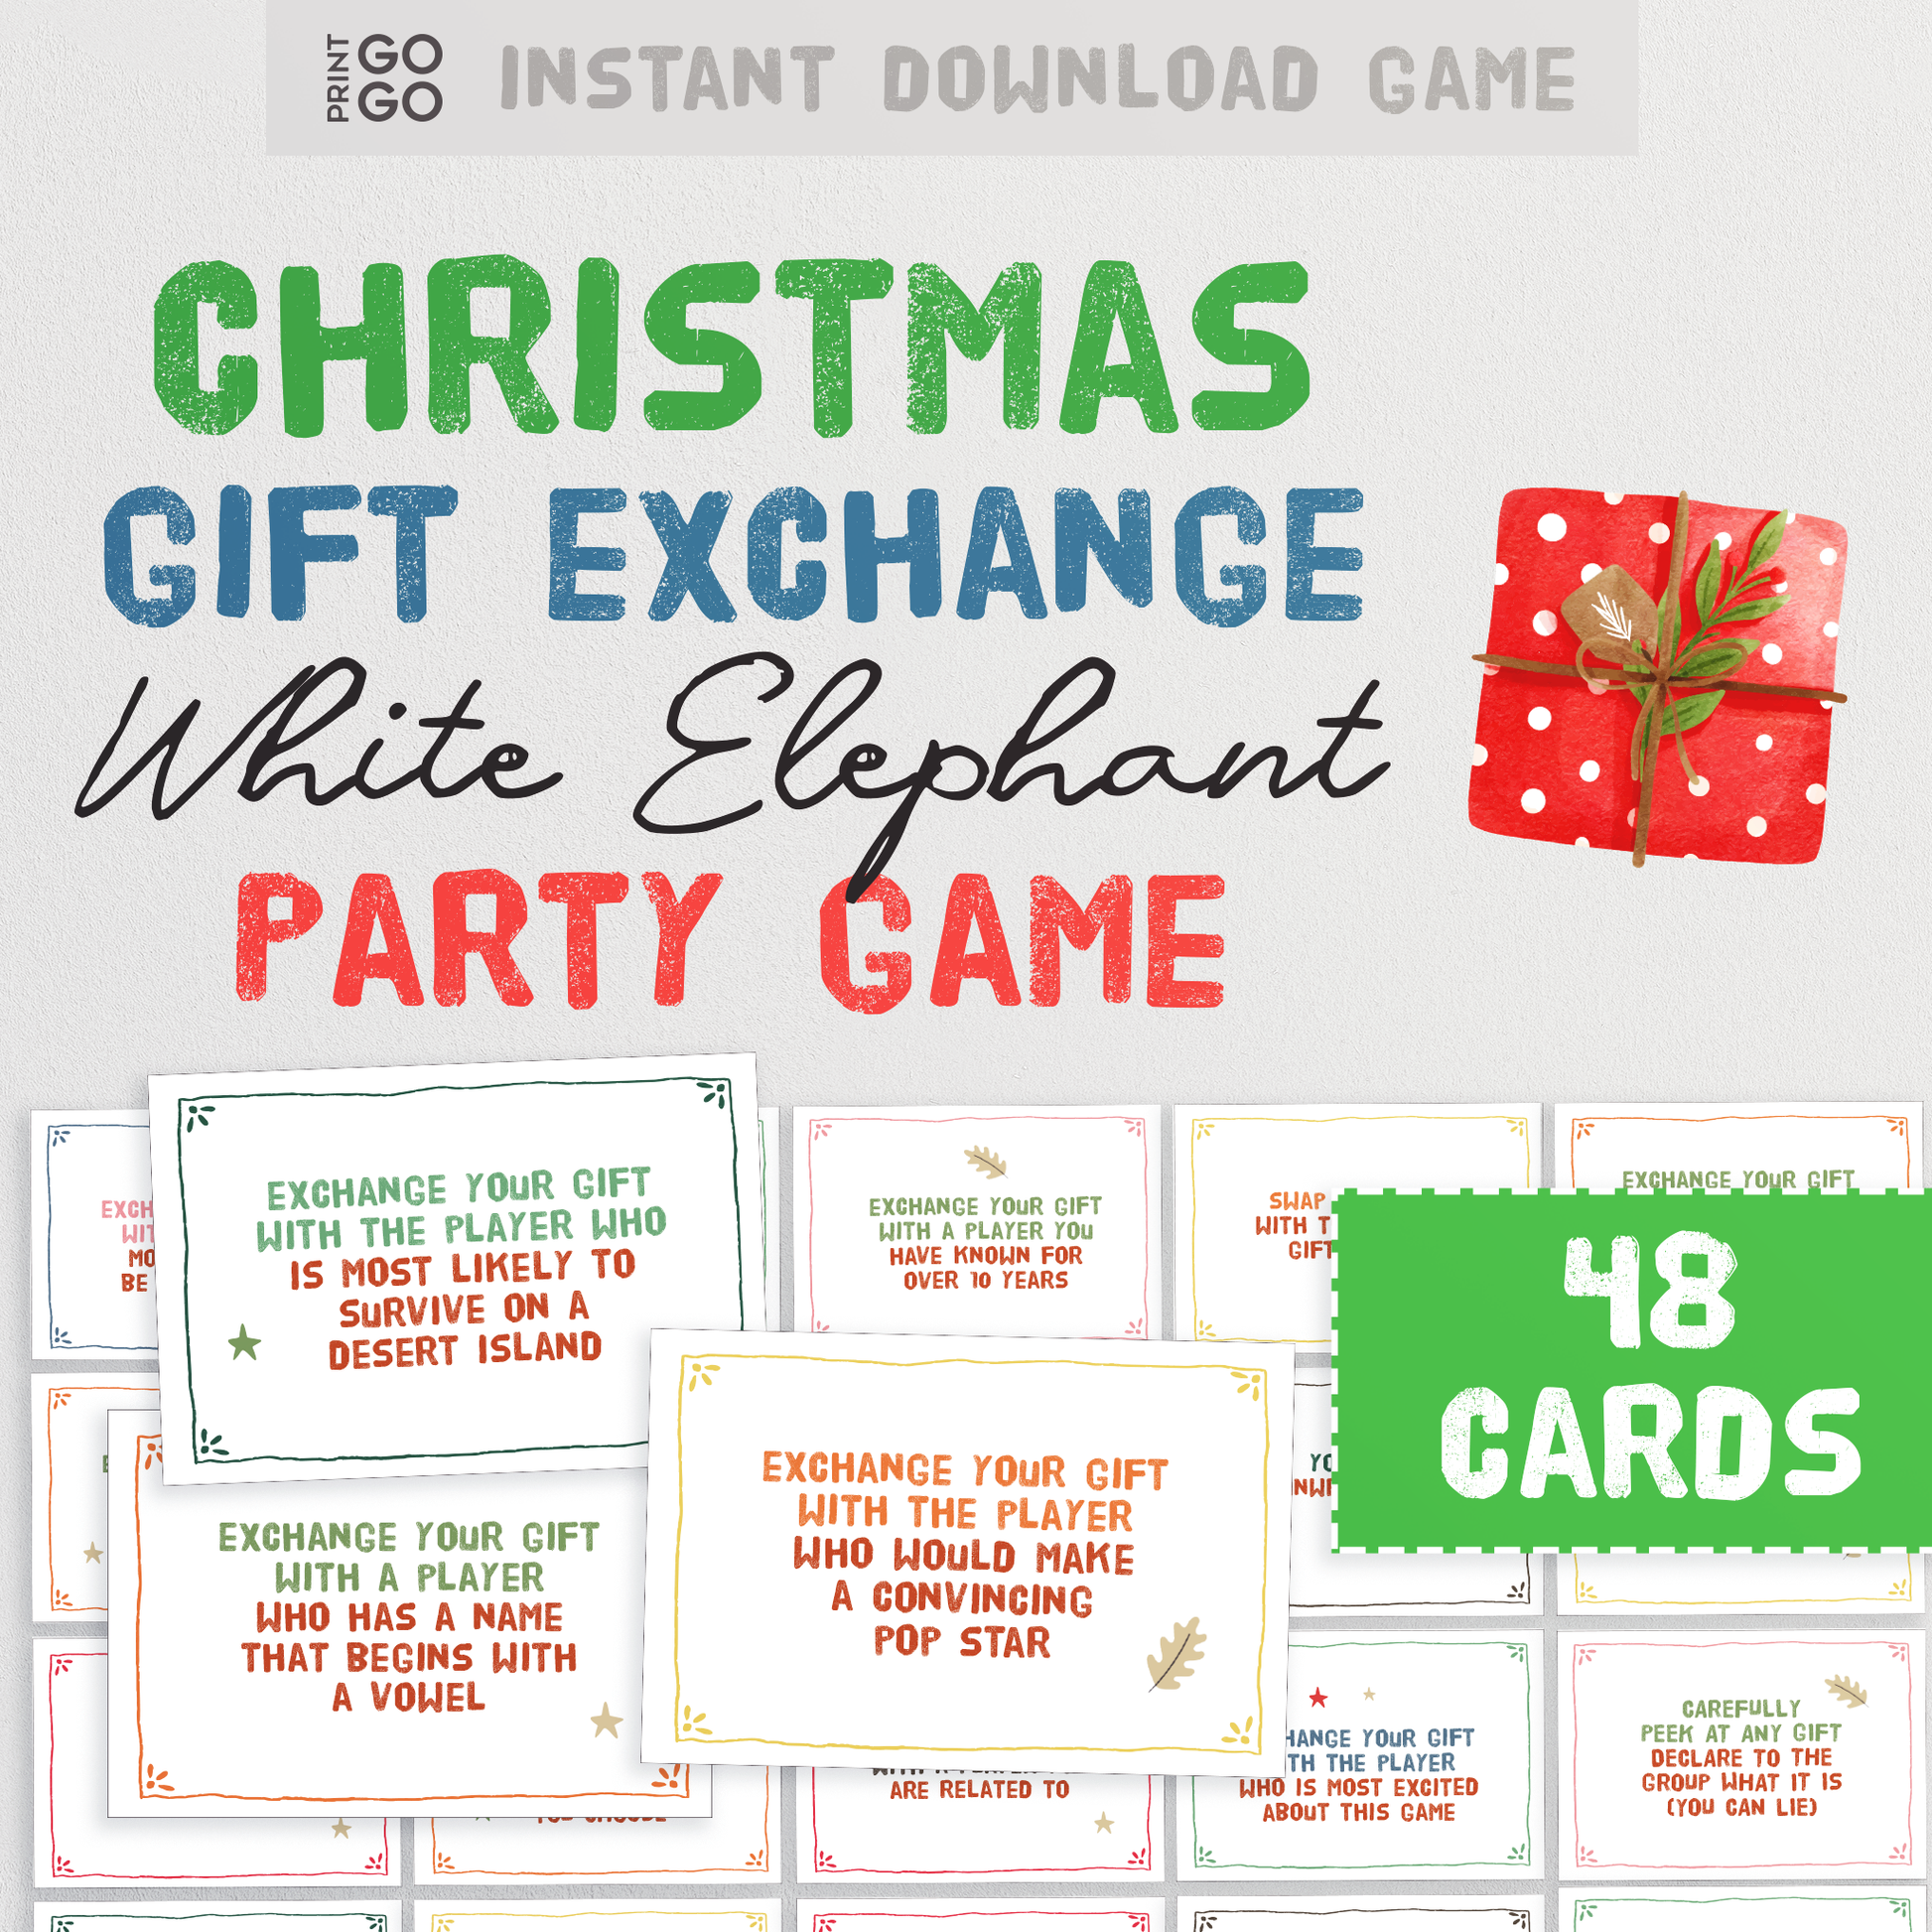 Free White Elephant Gift Exchange Holiday Party Communication